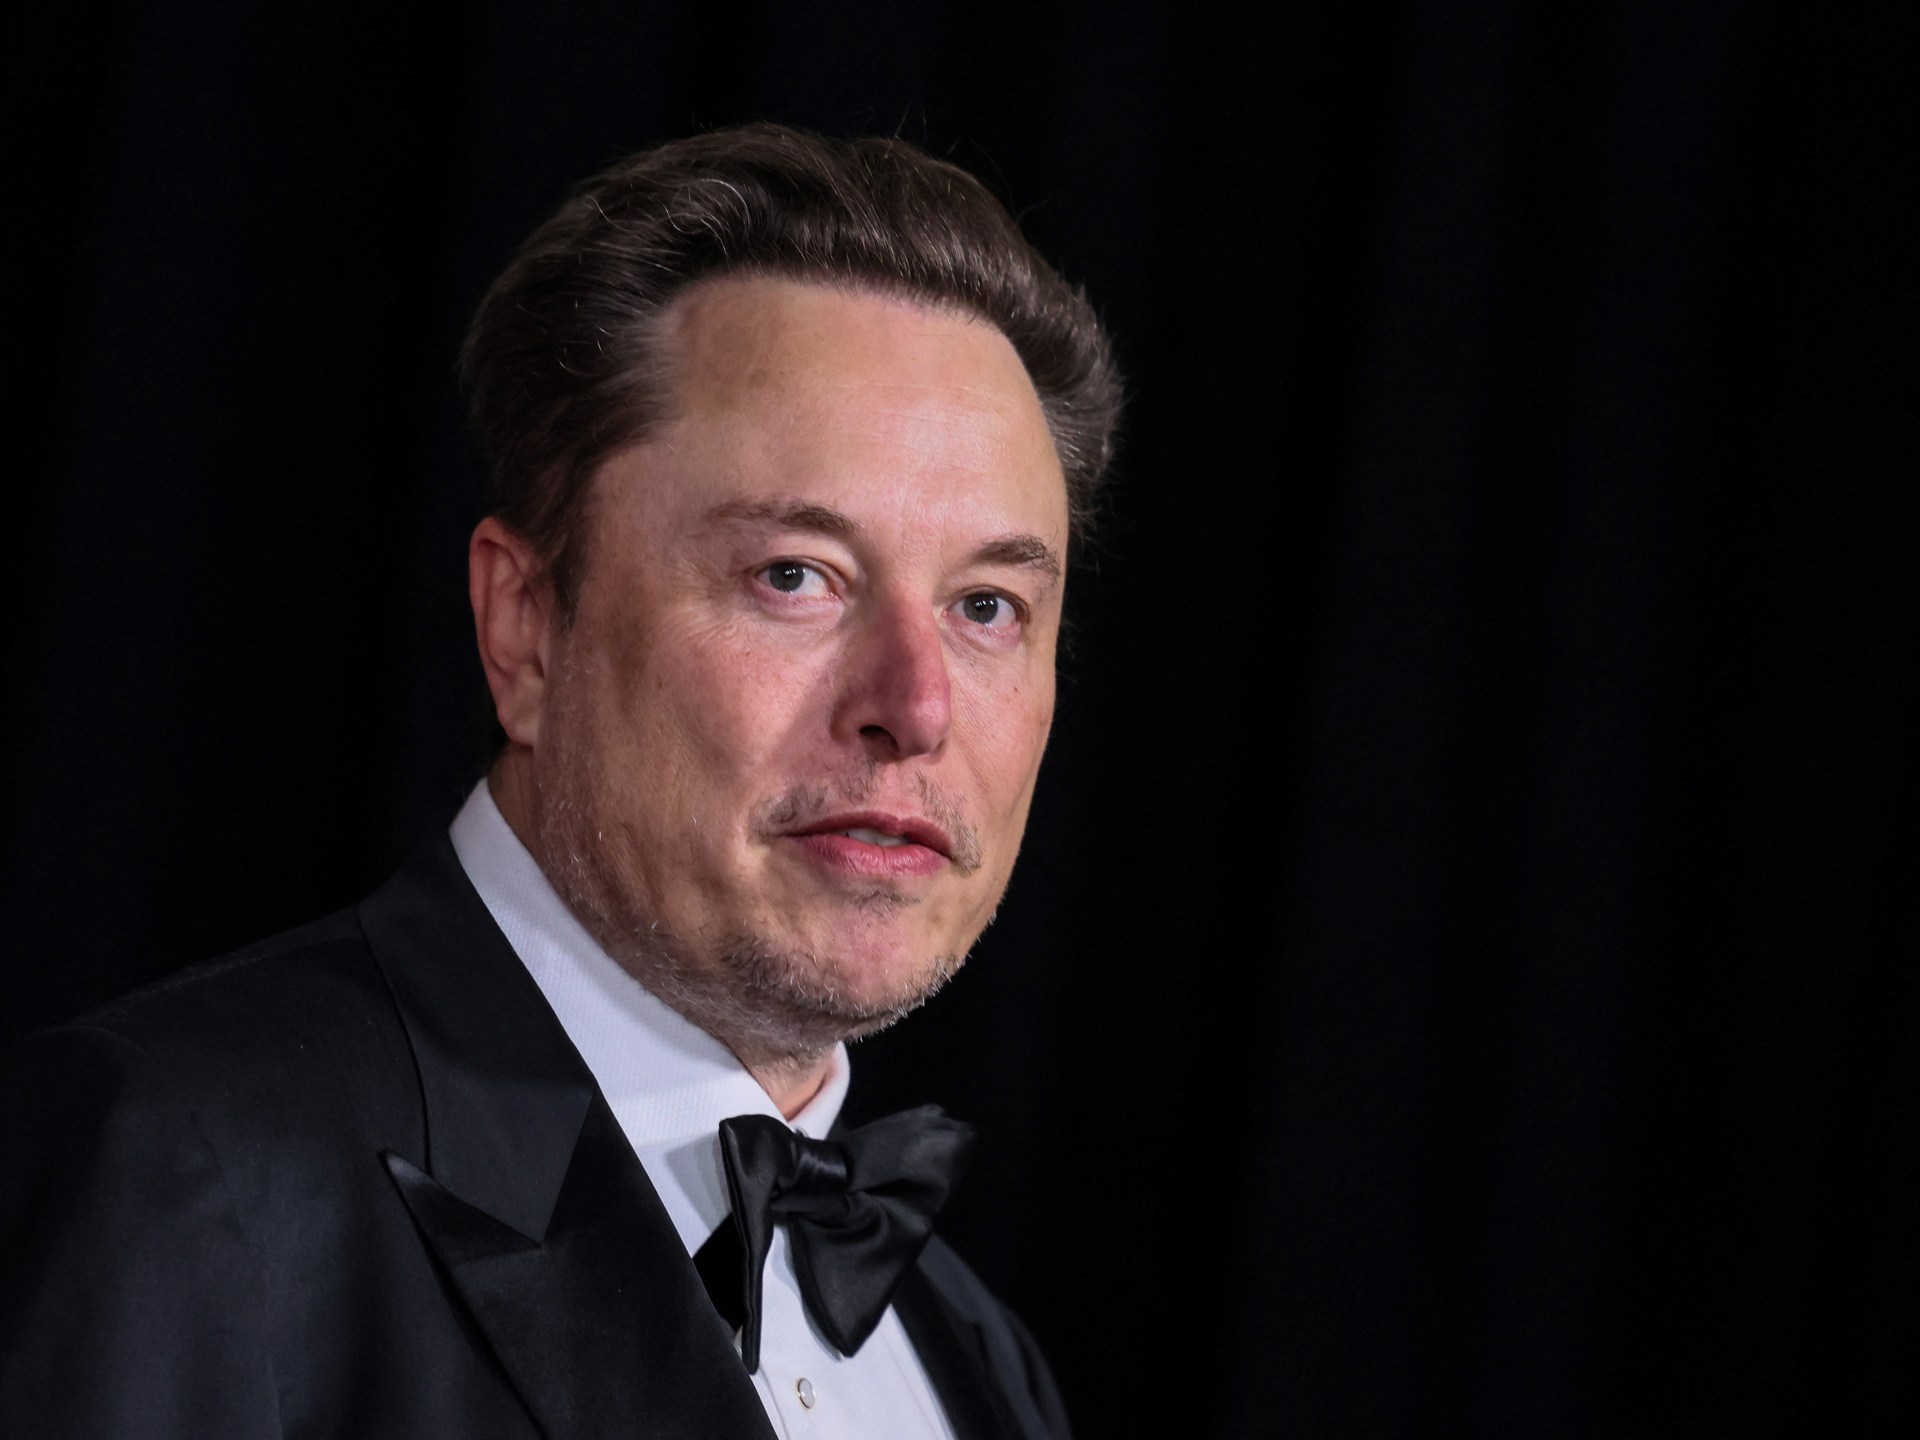 ‘Arrogant billionaire’: Australia, Musk in war of words over censorship